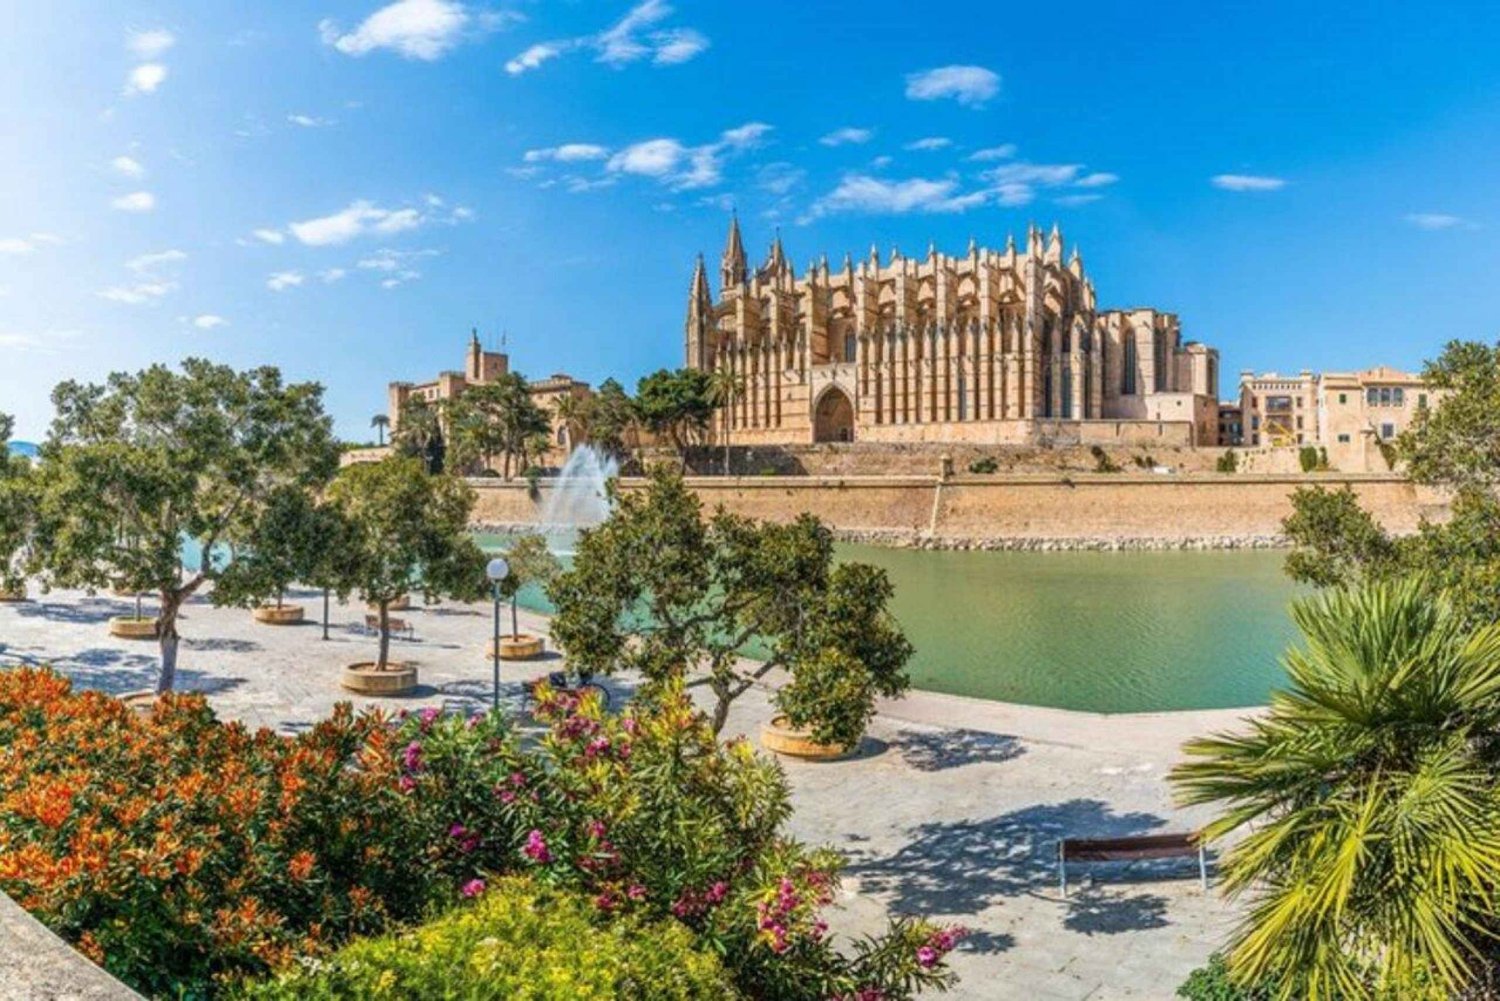 Palma de Mallorca: Must see private Tour